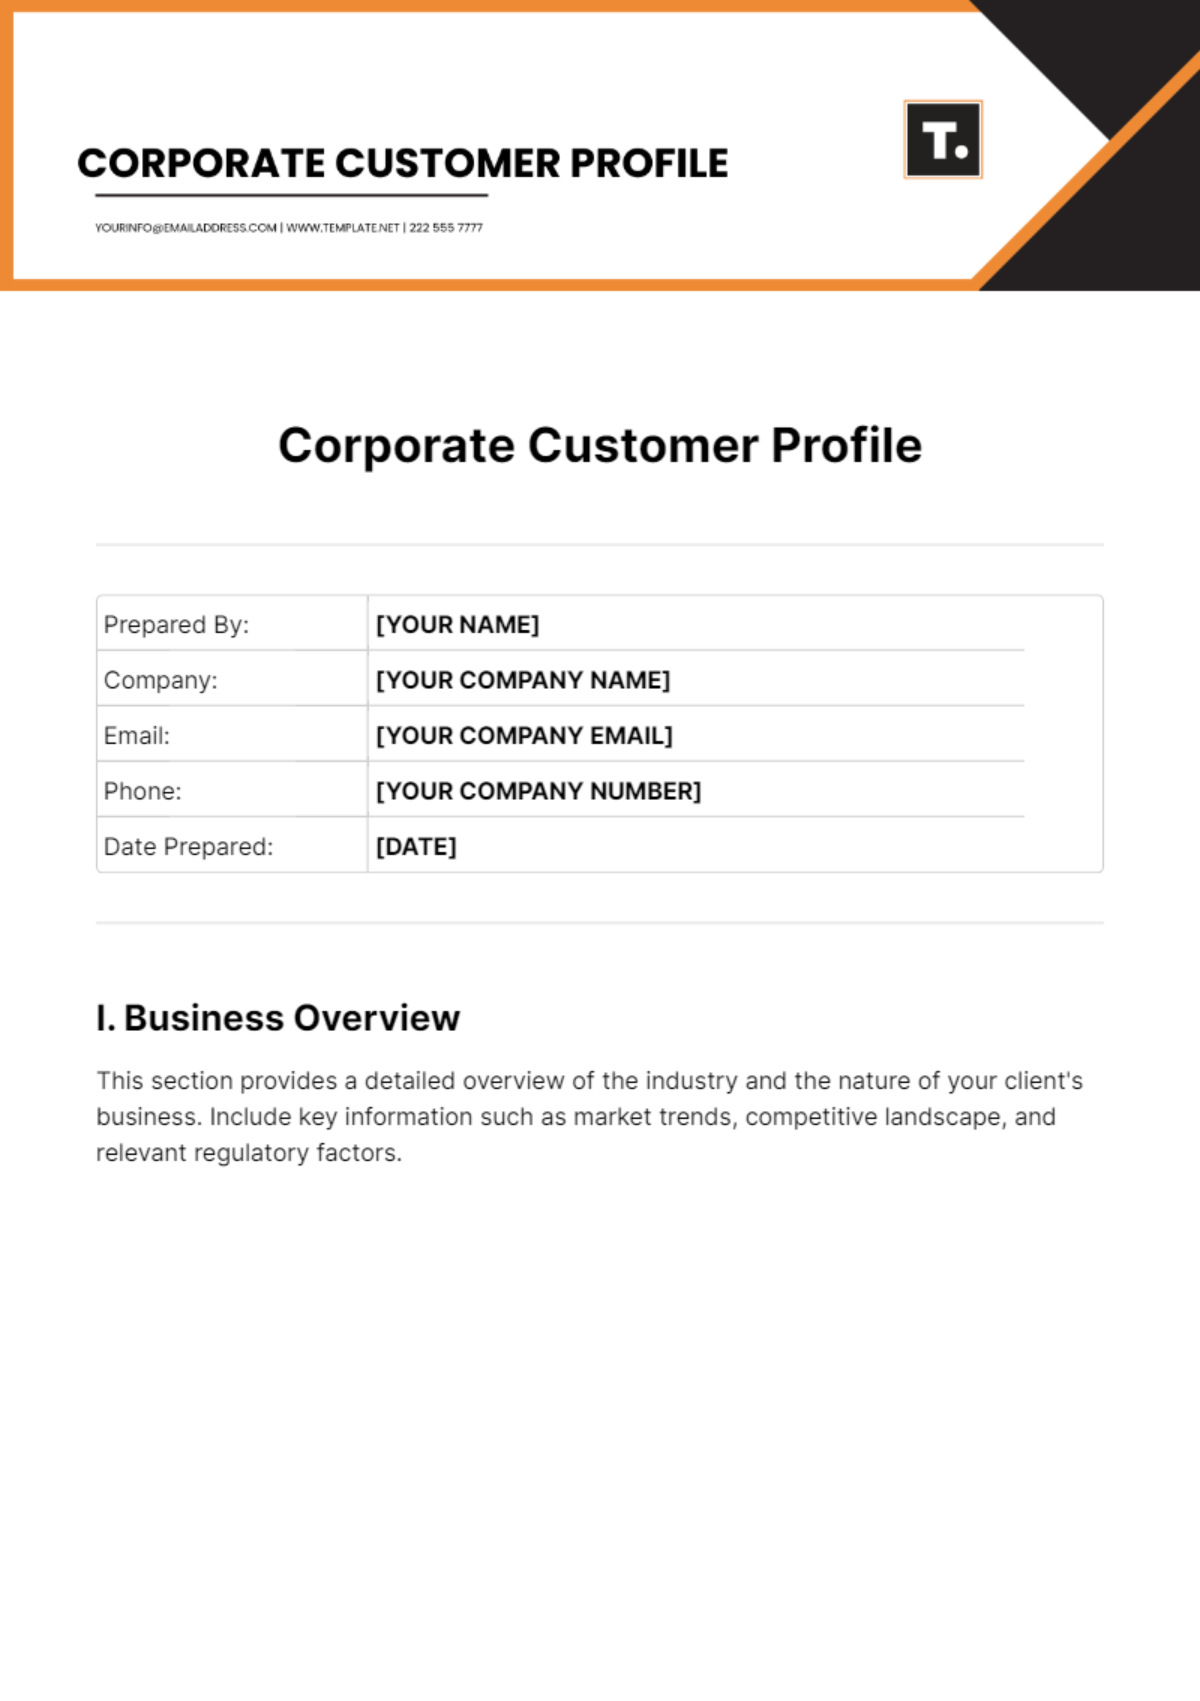 Corporate Customer Profile Template